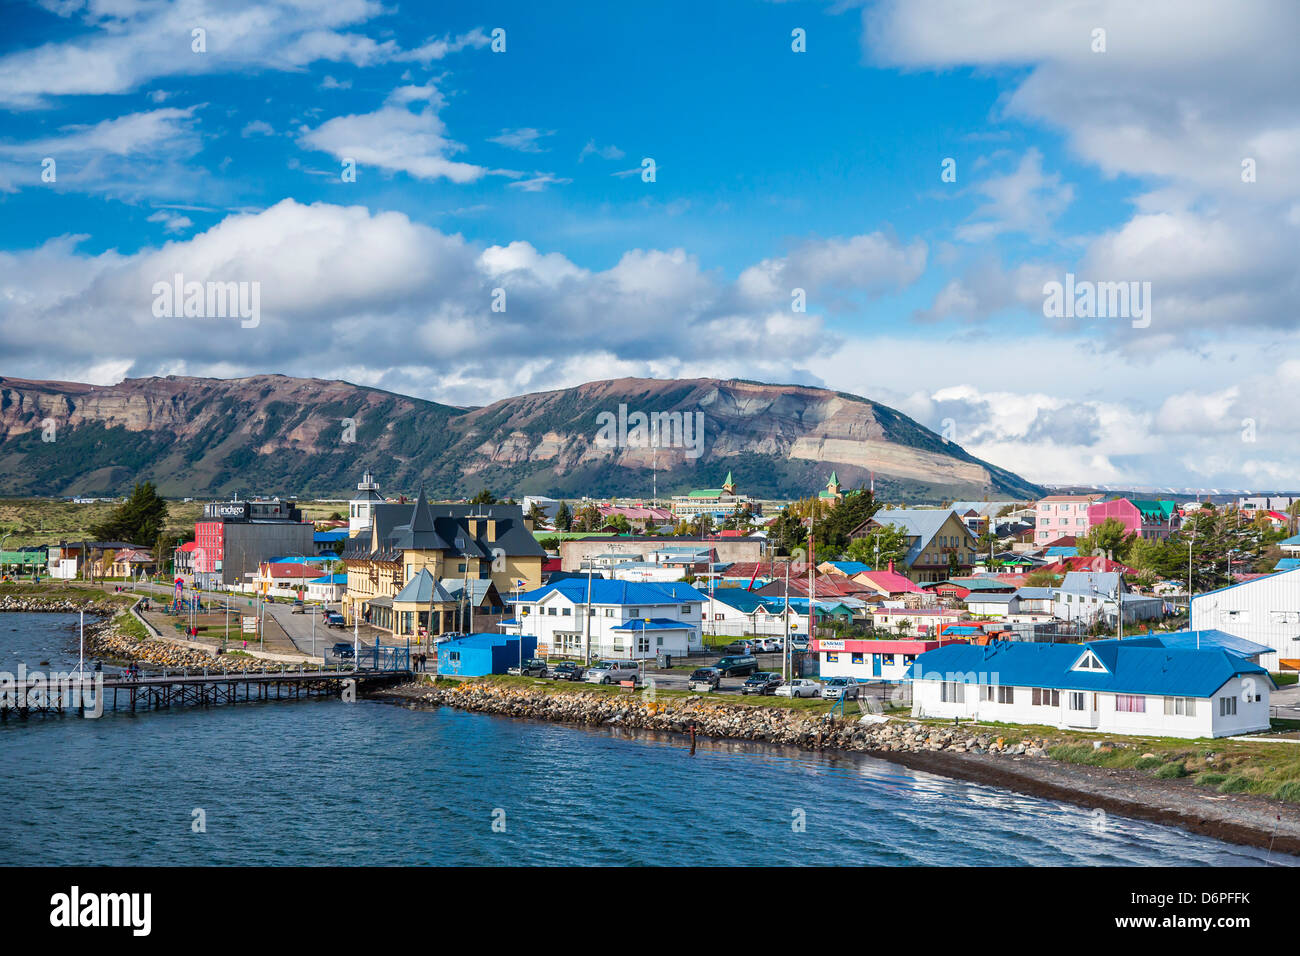 Puerto natales chile immagini e fotografie stock ad alta risoluzione - Alamy